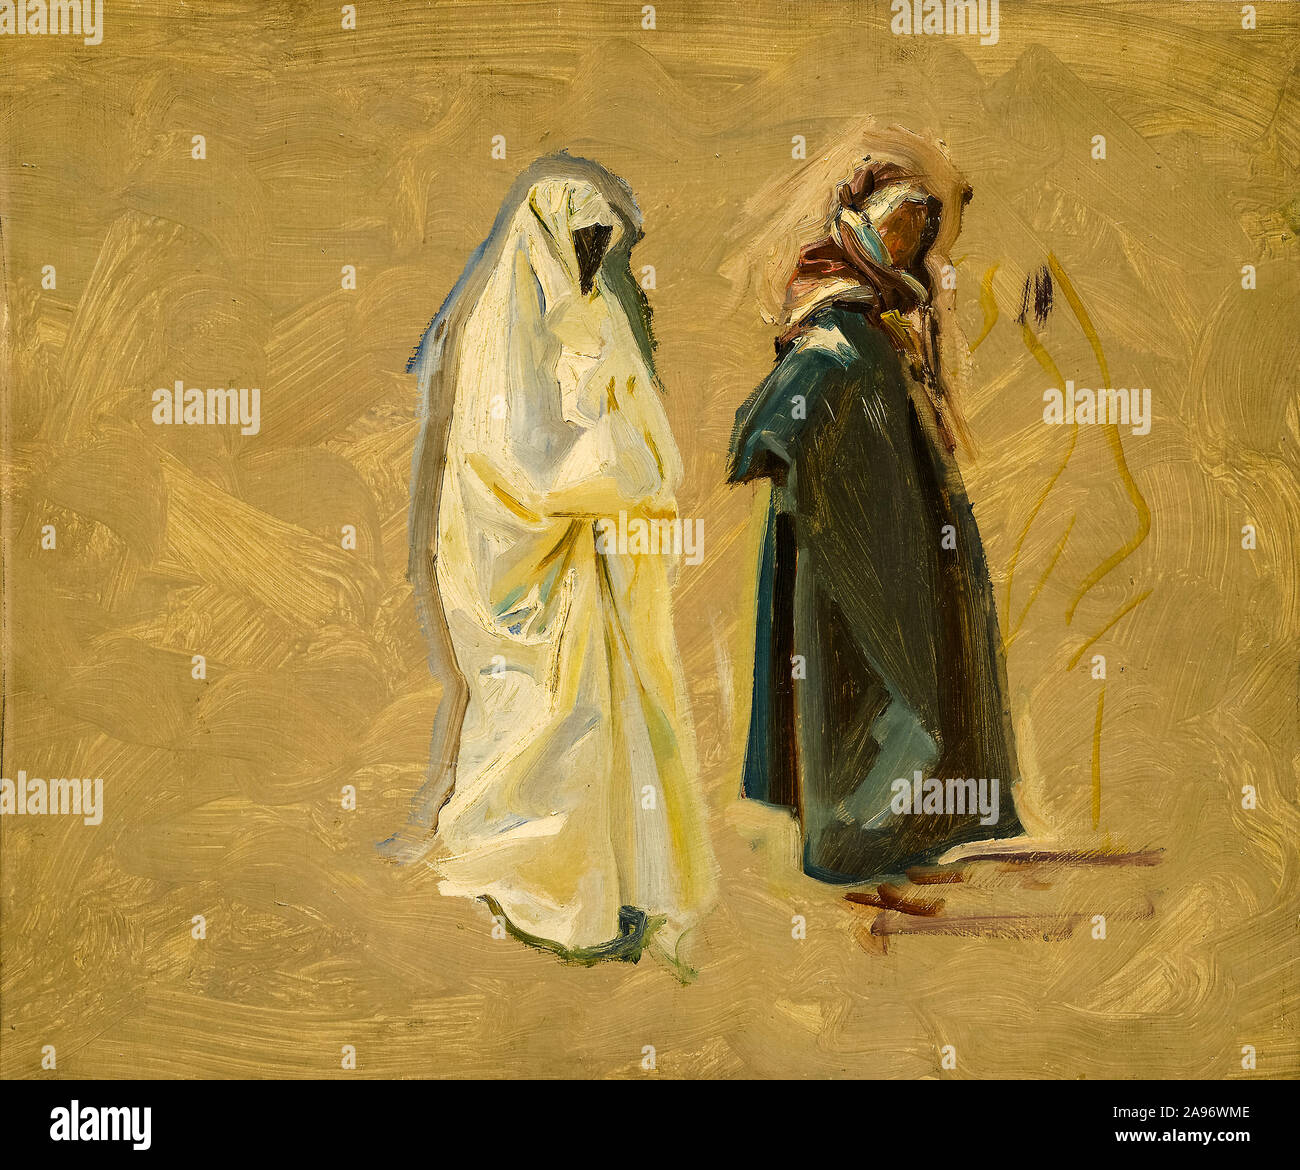 John Singer Sargent, étude de deux bédouins, peinture, 1905-1906 Banque D'Images